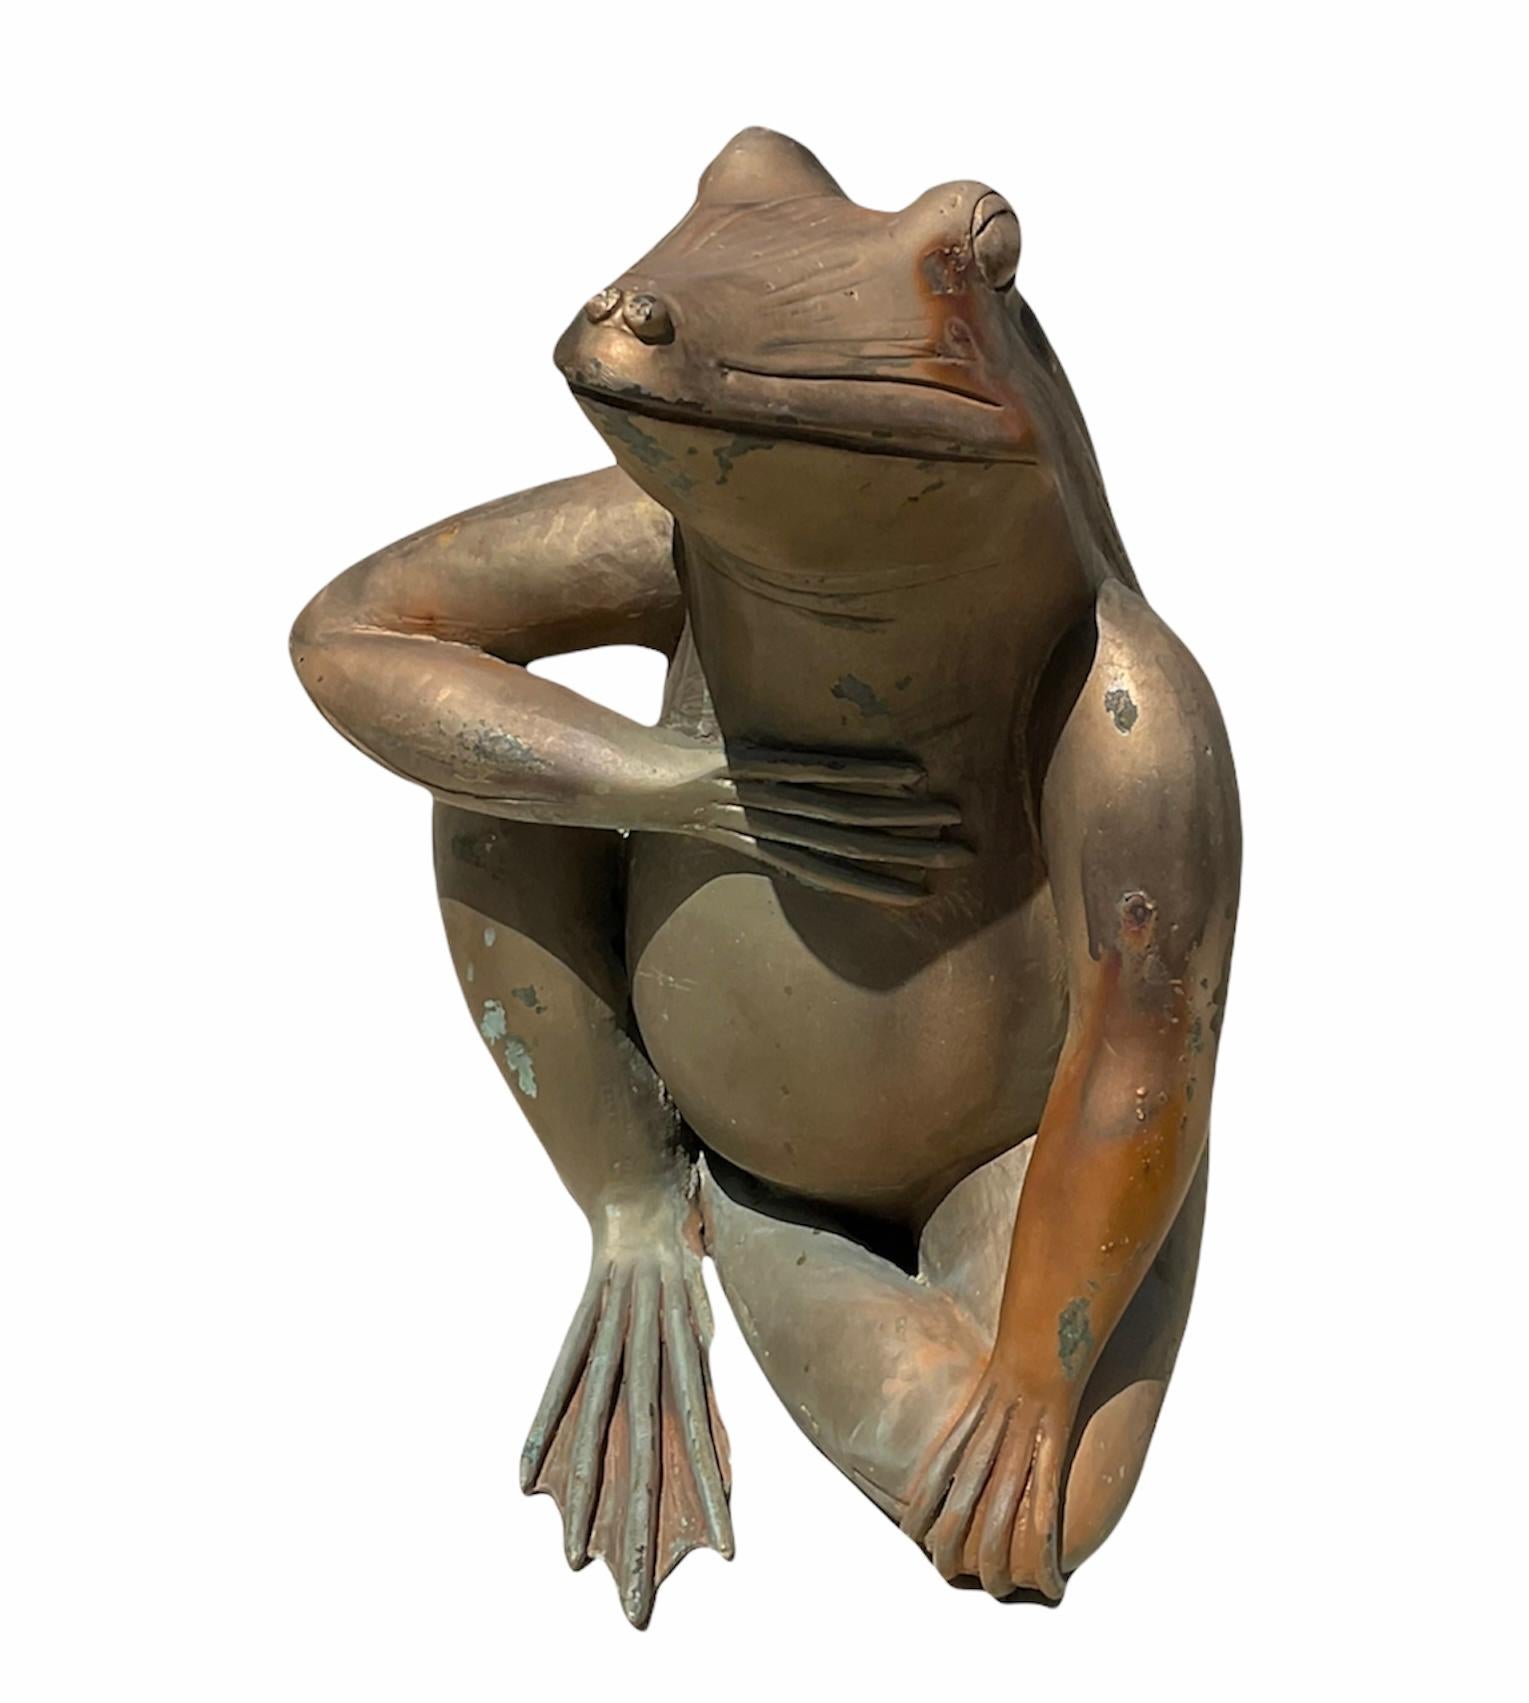 Il s'agit d'une sculpture en bronze patiné de taille moyenne représentant une grenouille assise avec la main droite dans la poitrine (son cœur). Ce geste symbolise la dignité et l'honneur. Cela signifie également qu'elle a une intention sincère ou